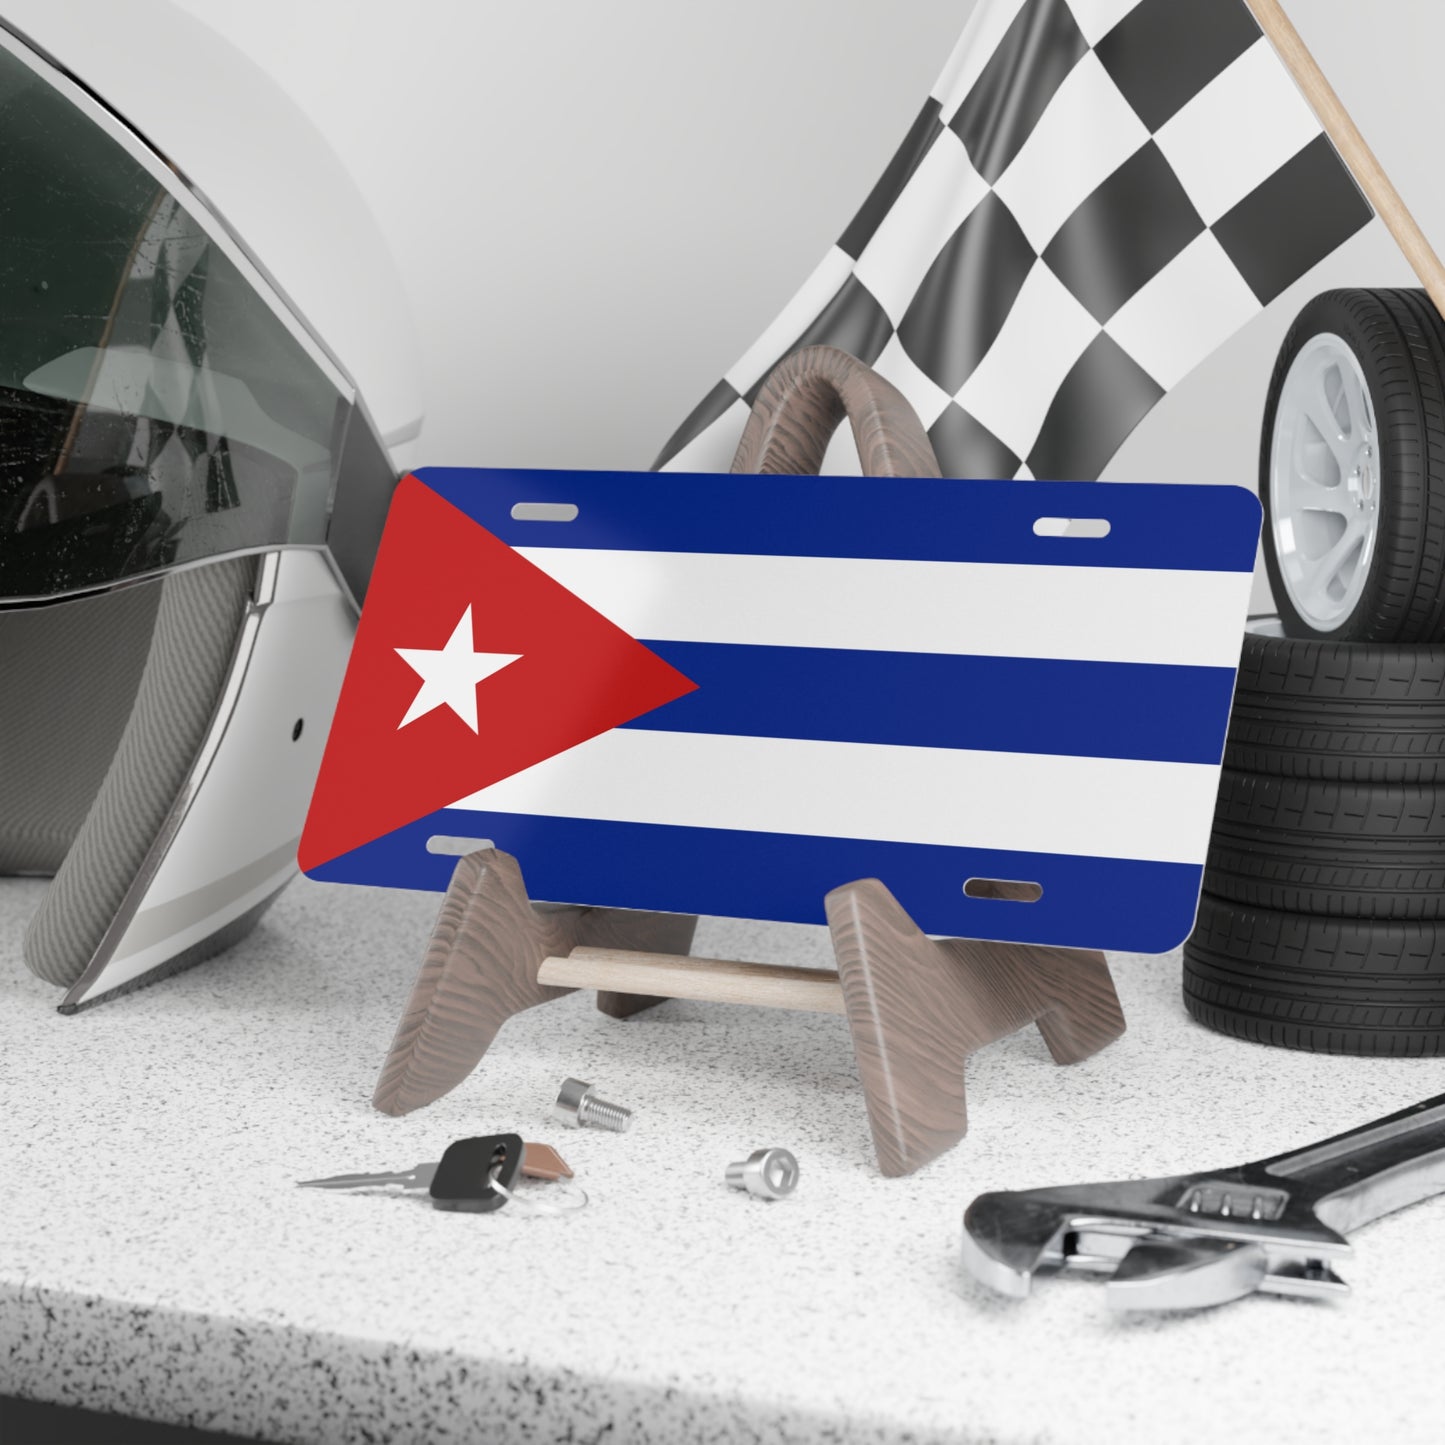 Cuba Vanity Plate